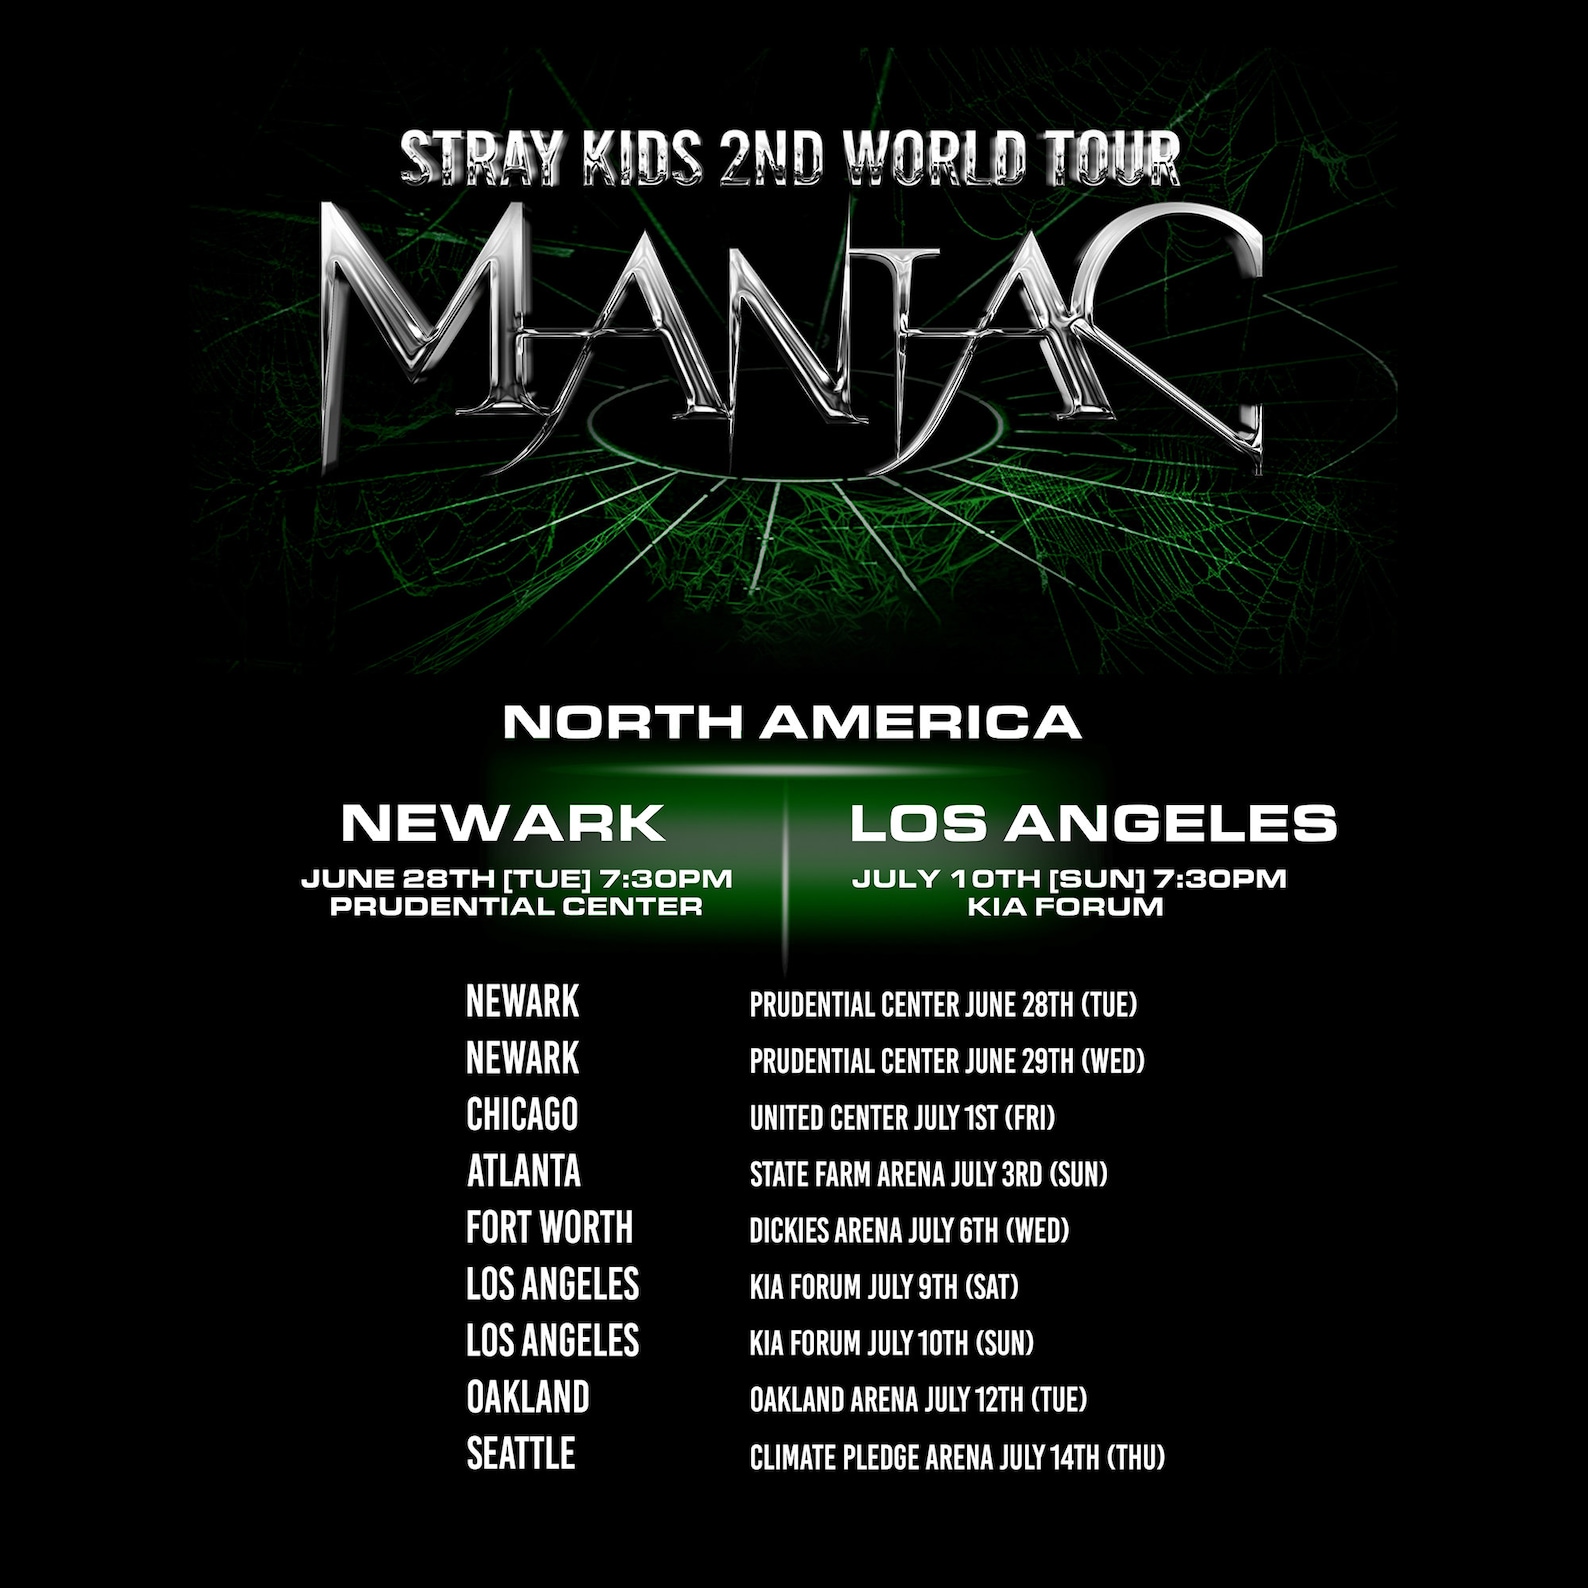 maniac tour song list